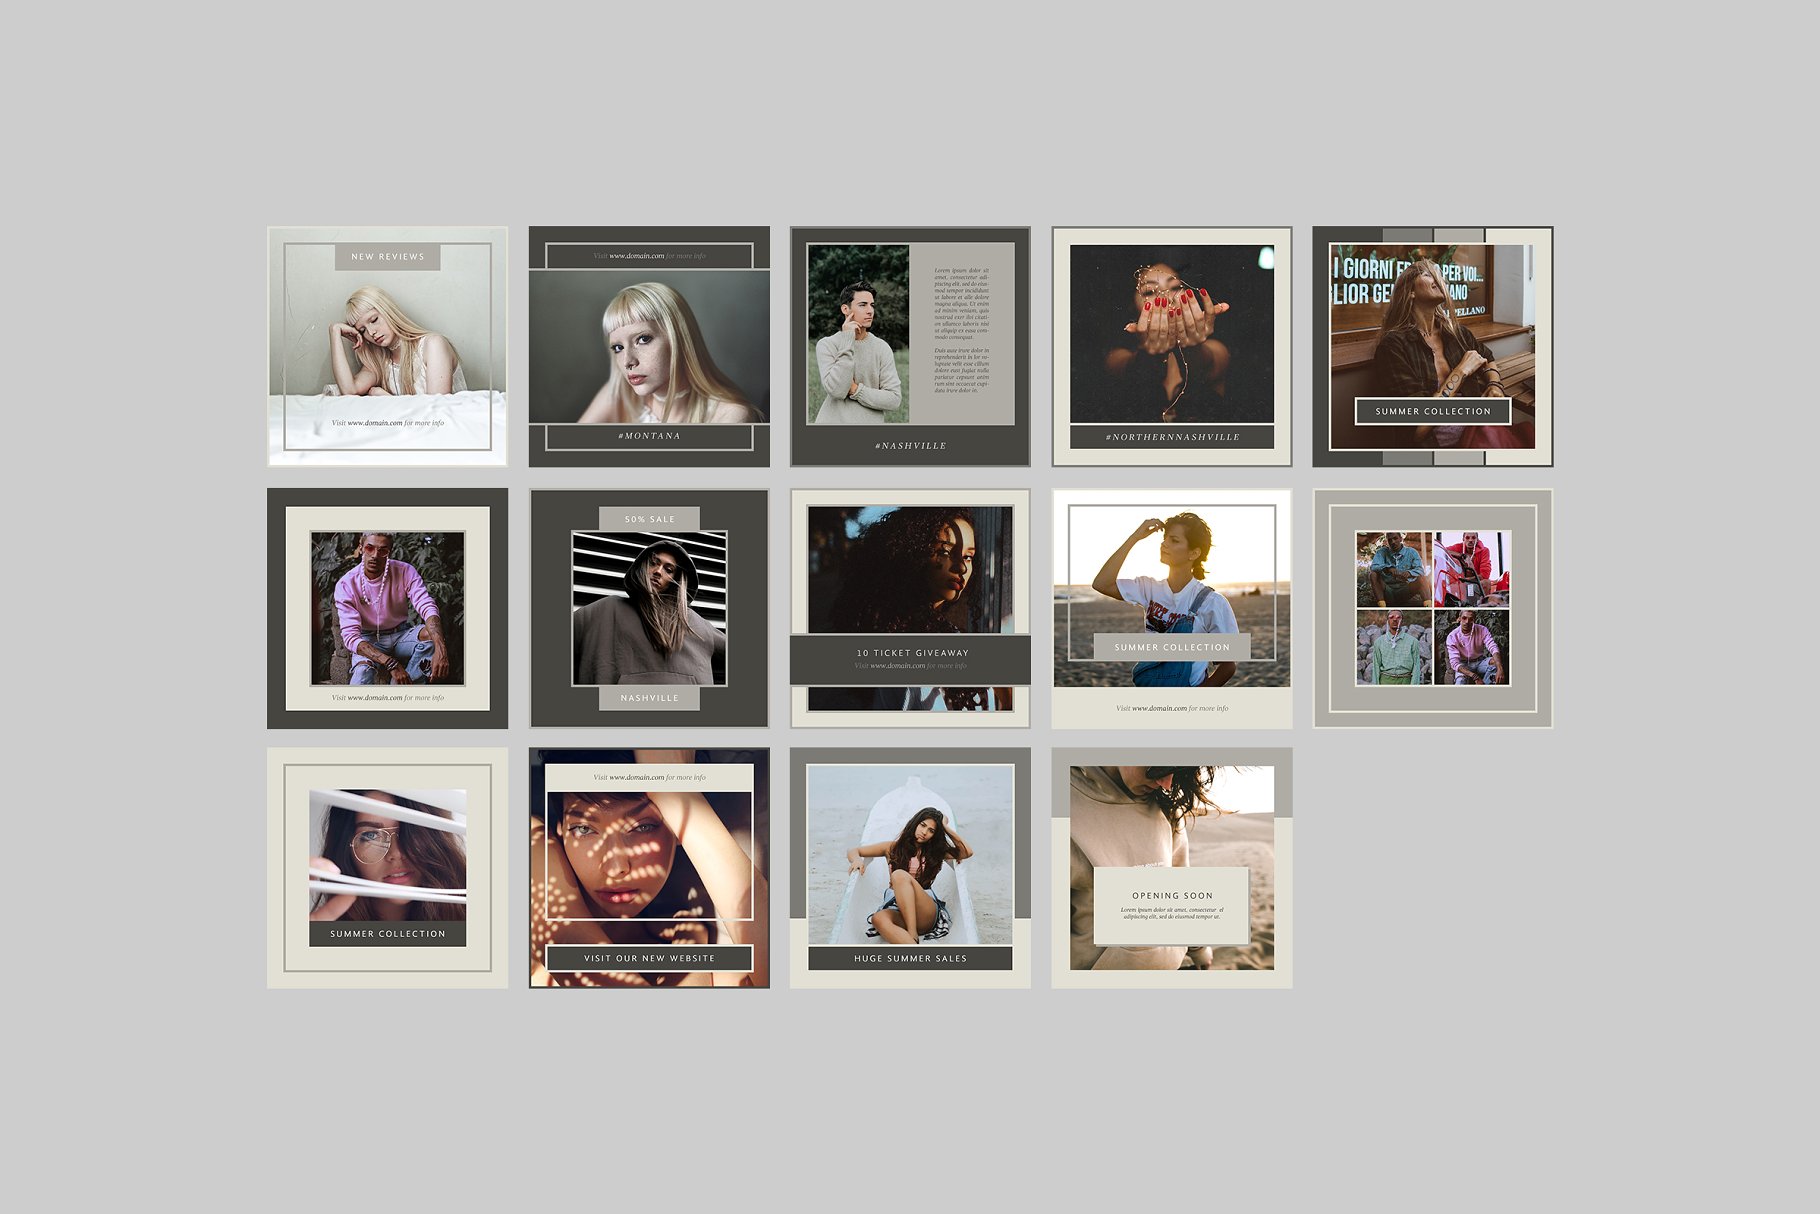 时尚模特摄影主题社交媒体贴图模板蚂蚁素材精选 Nashville Social Media Templates插图(6)